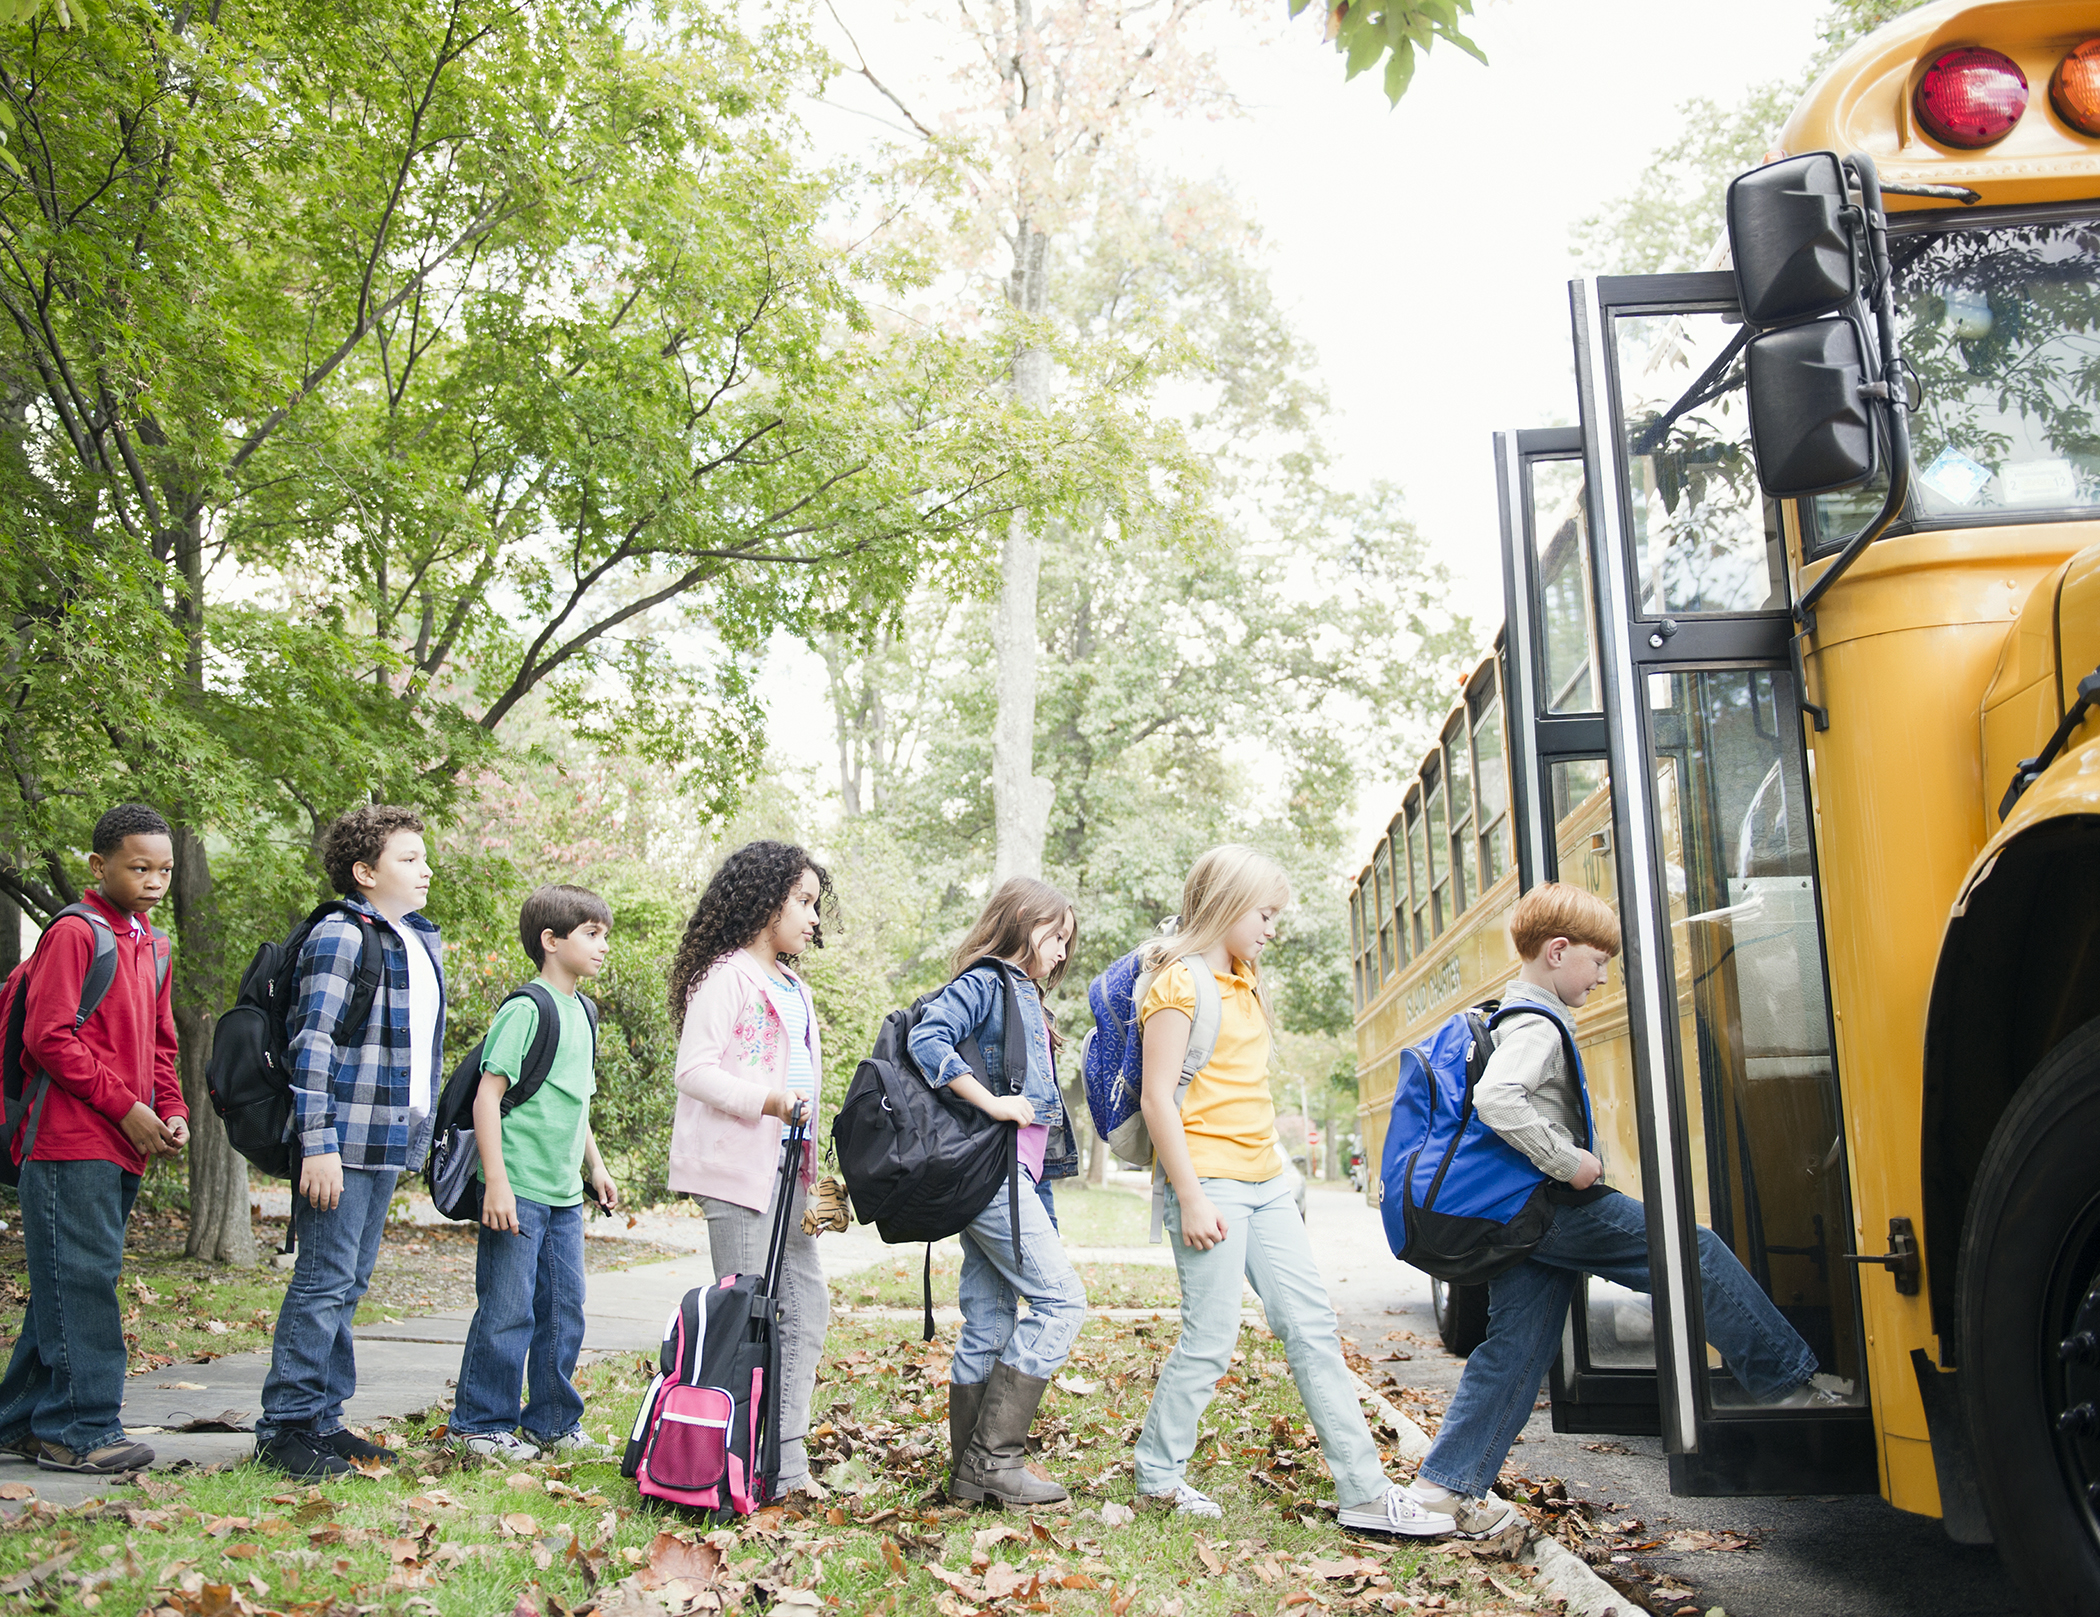 children boarding school bus